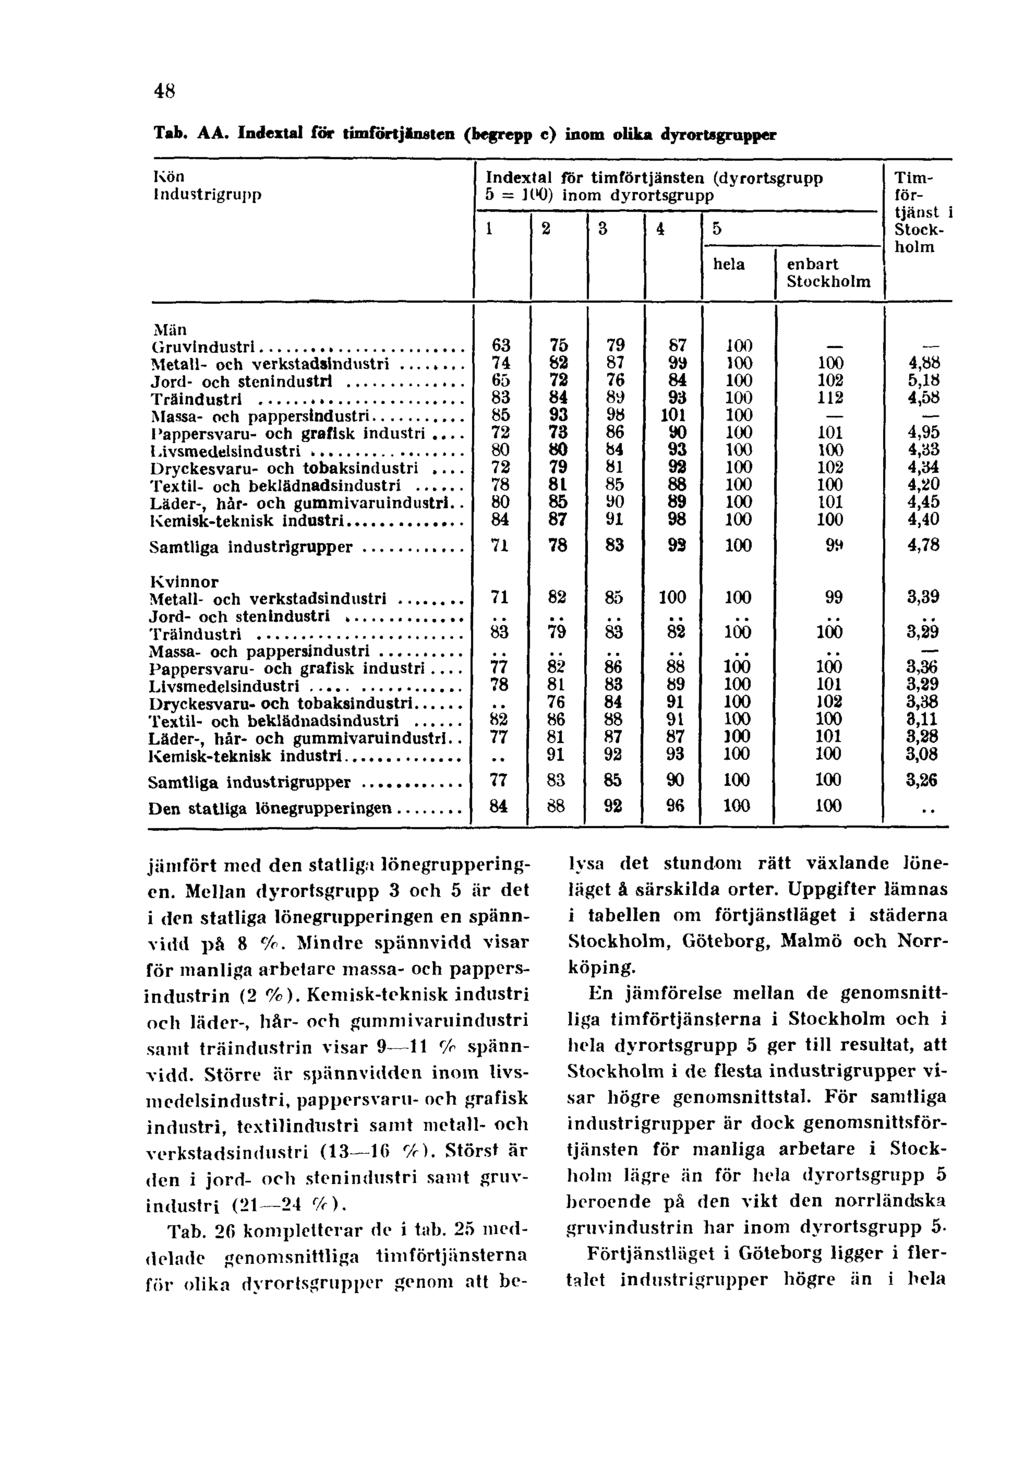 48 Tab. AA. Indextal för timförtjänsten (begrepp c) inom olika dyrortsgrupper jämfört med den statlig.» lönegrupperingen.